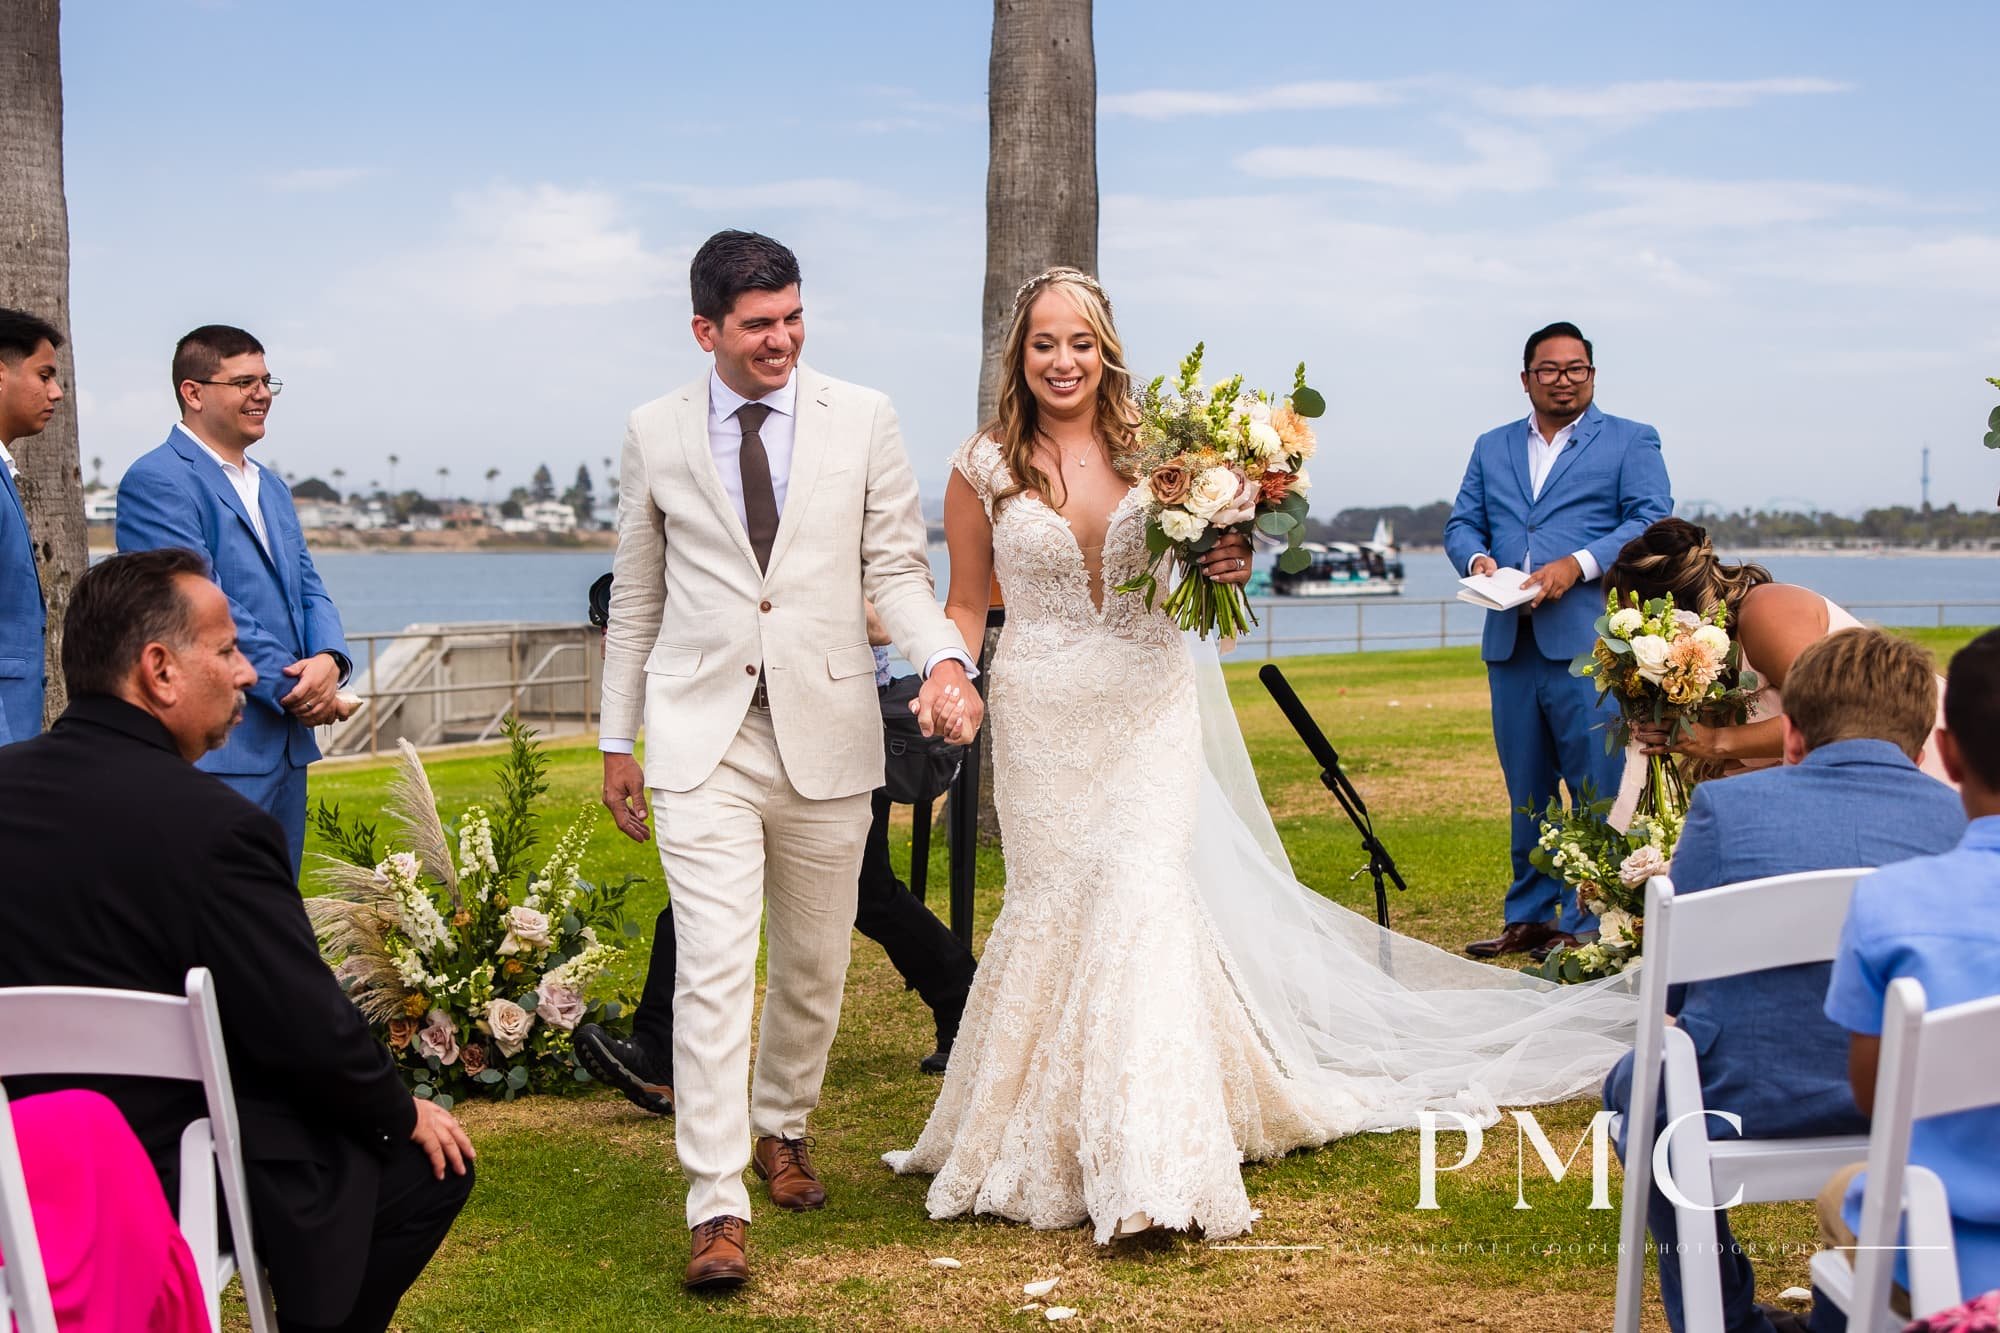 Tower Beach Club - Mission Bay Wedding - Best San Diego Wedding Photographer-21.jpg